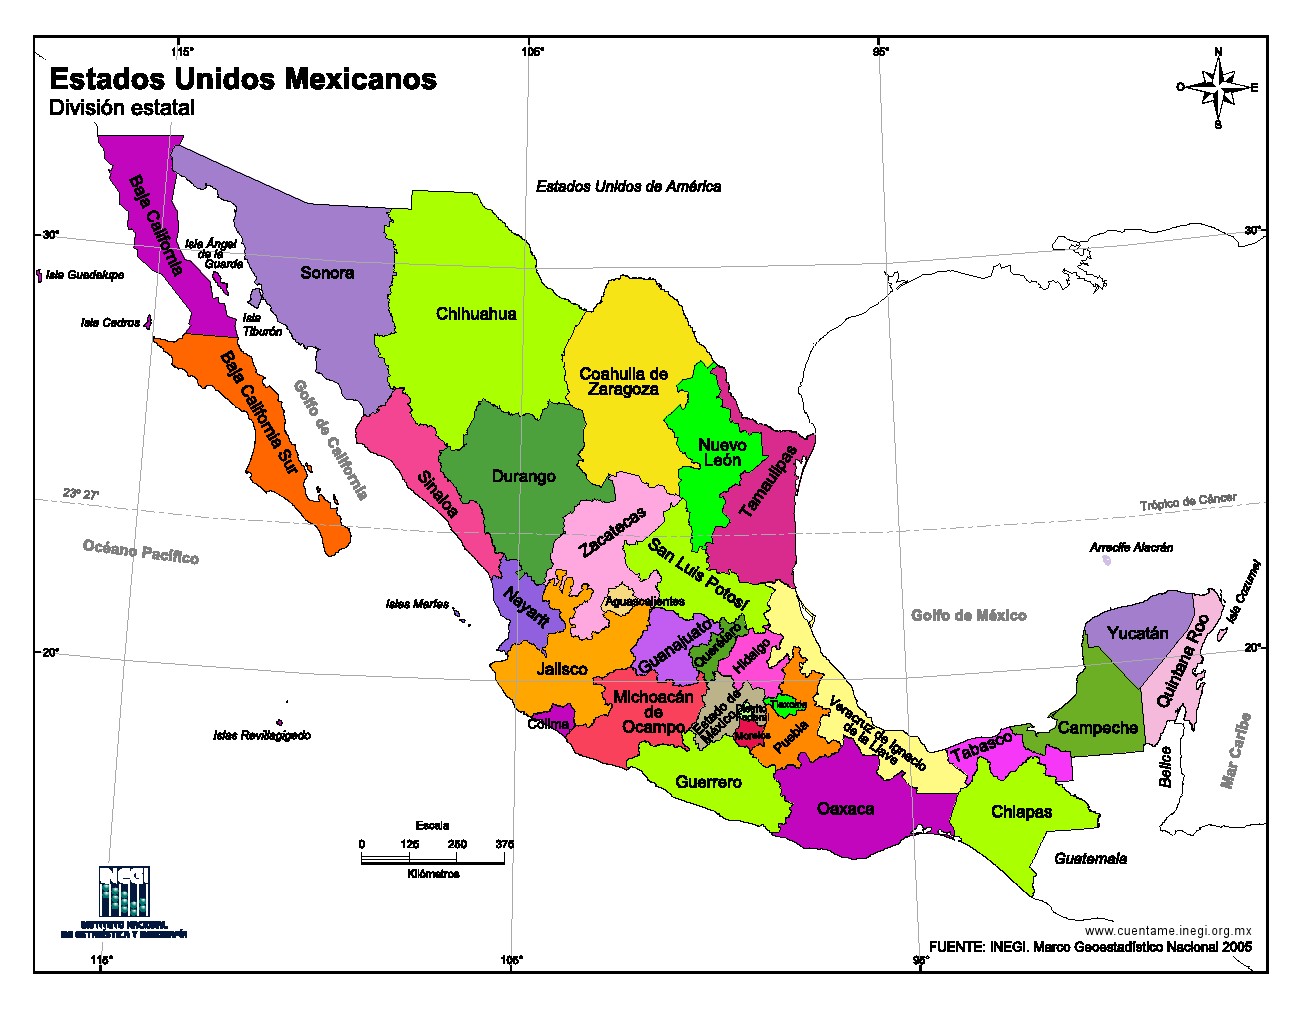 Mapa en color de Estados Unidos Mexicanos. INEGI de México